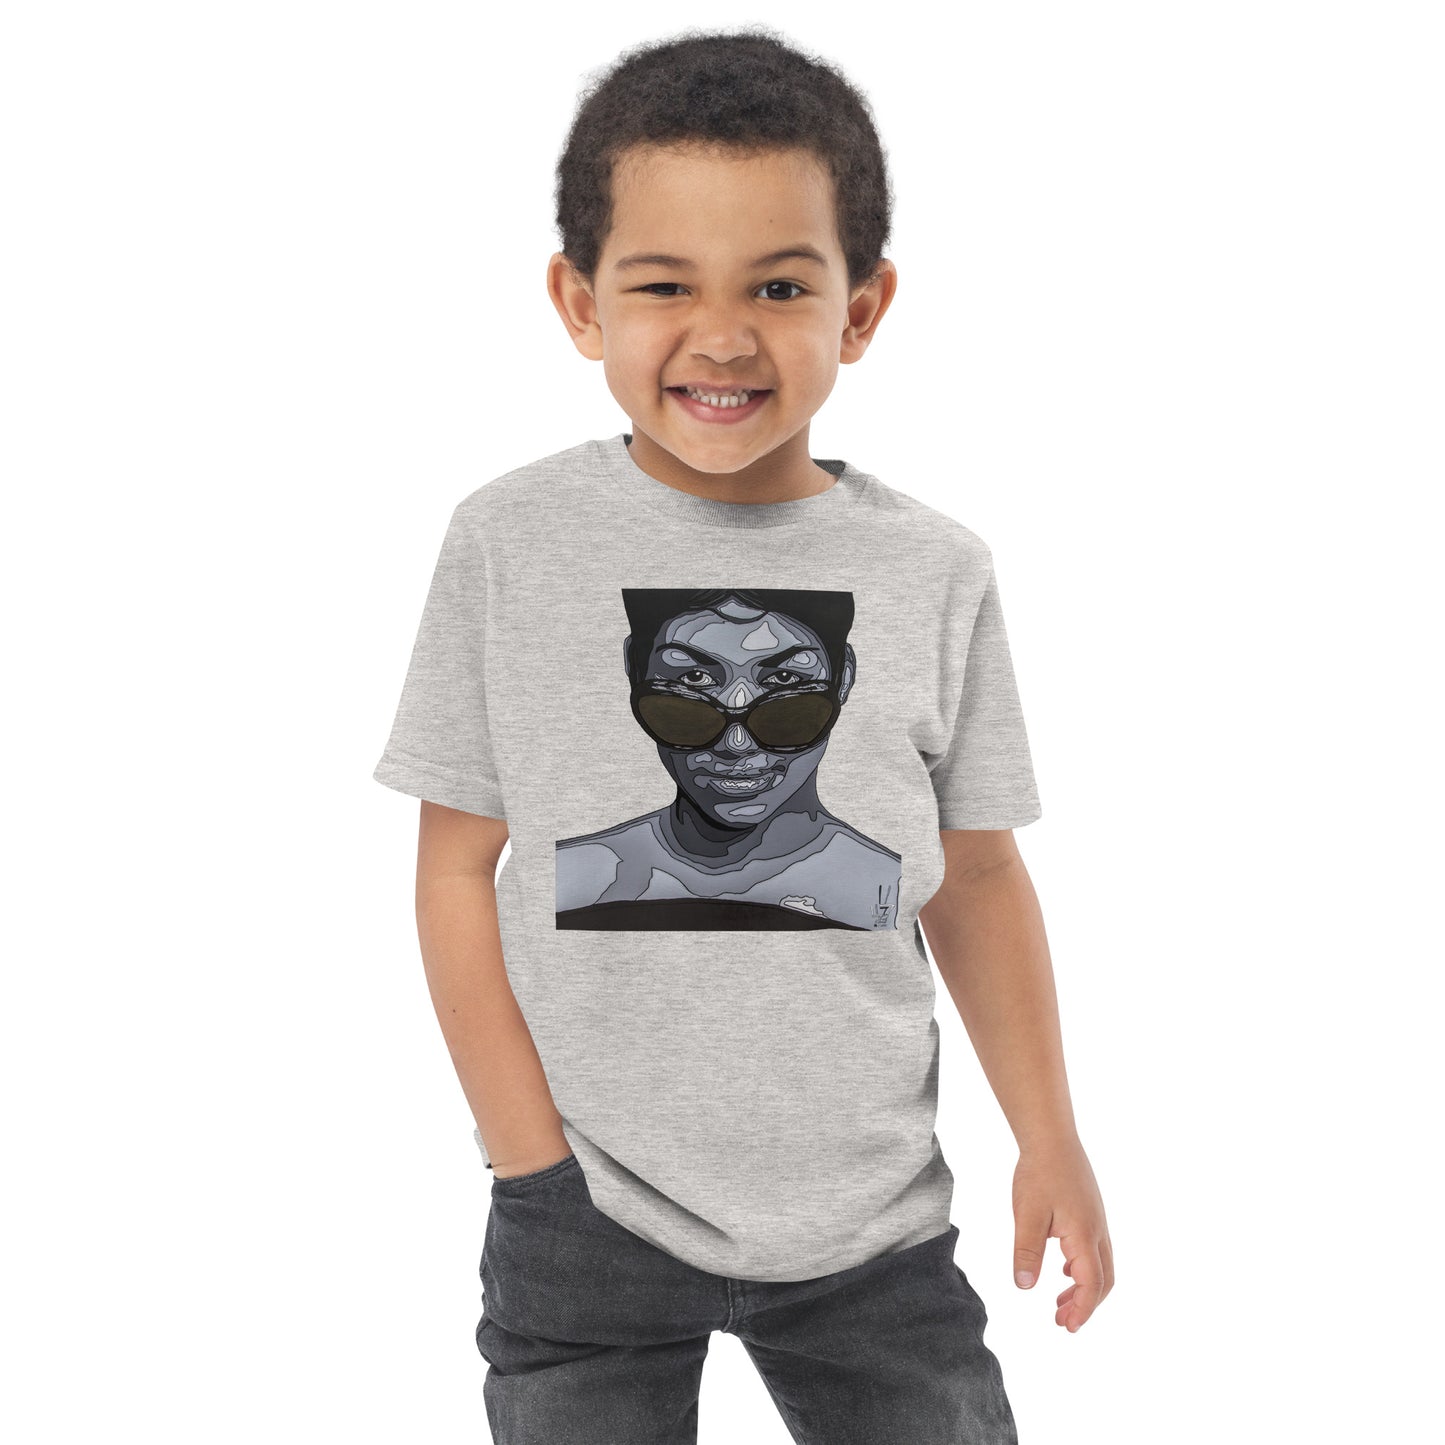 RESPECT - Toddler jersey t-shirt